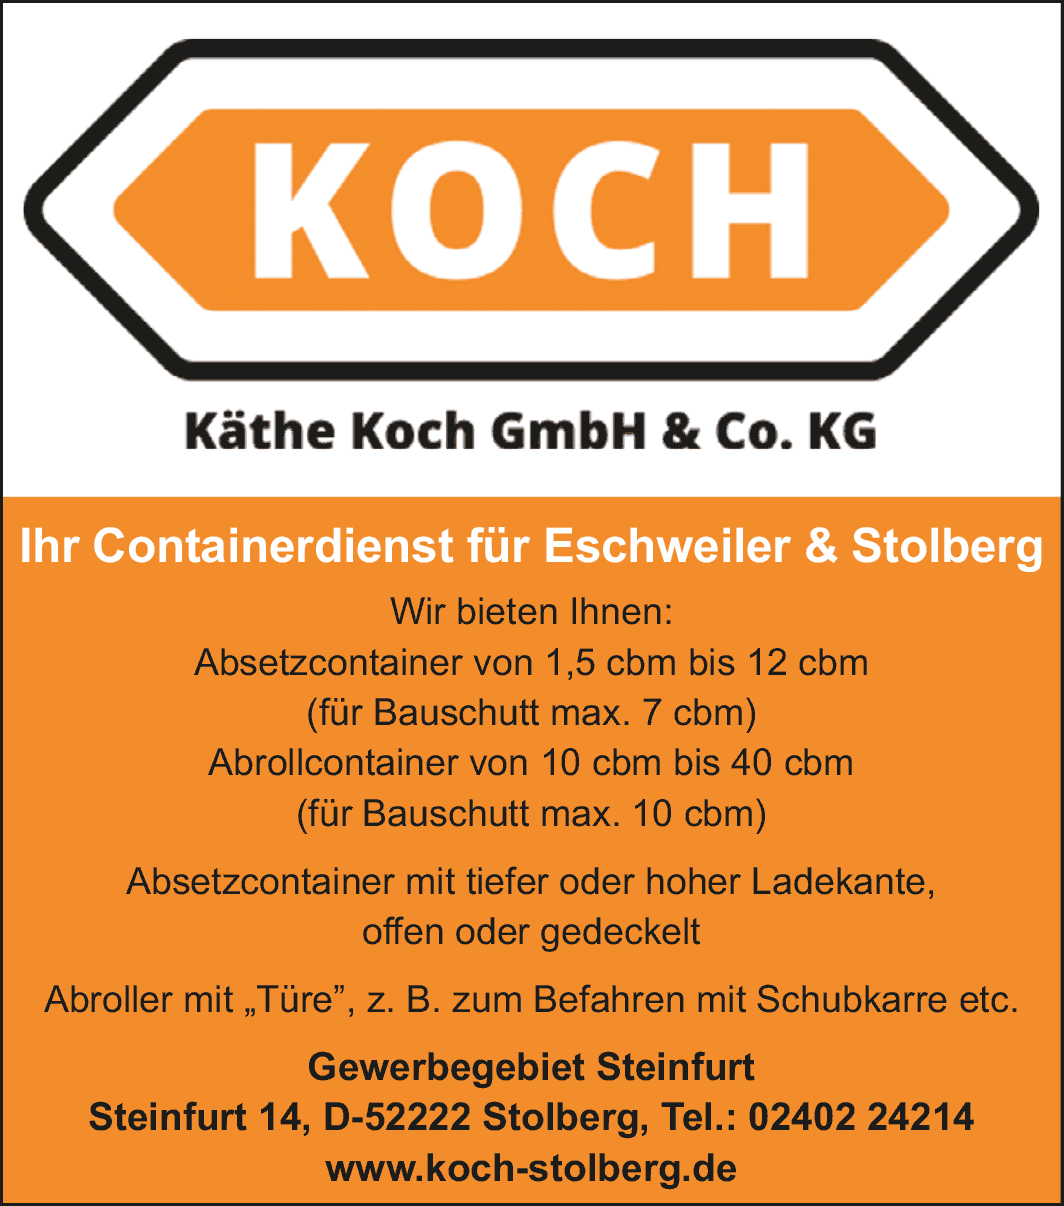 Ihr Containerdienst in Stolberg, Aachen, Eschweiler mit über 70 Jahren Erfahrung.